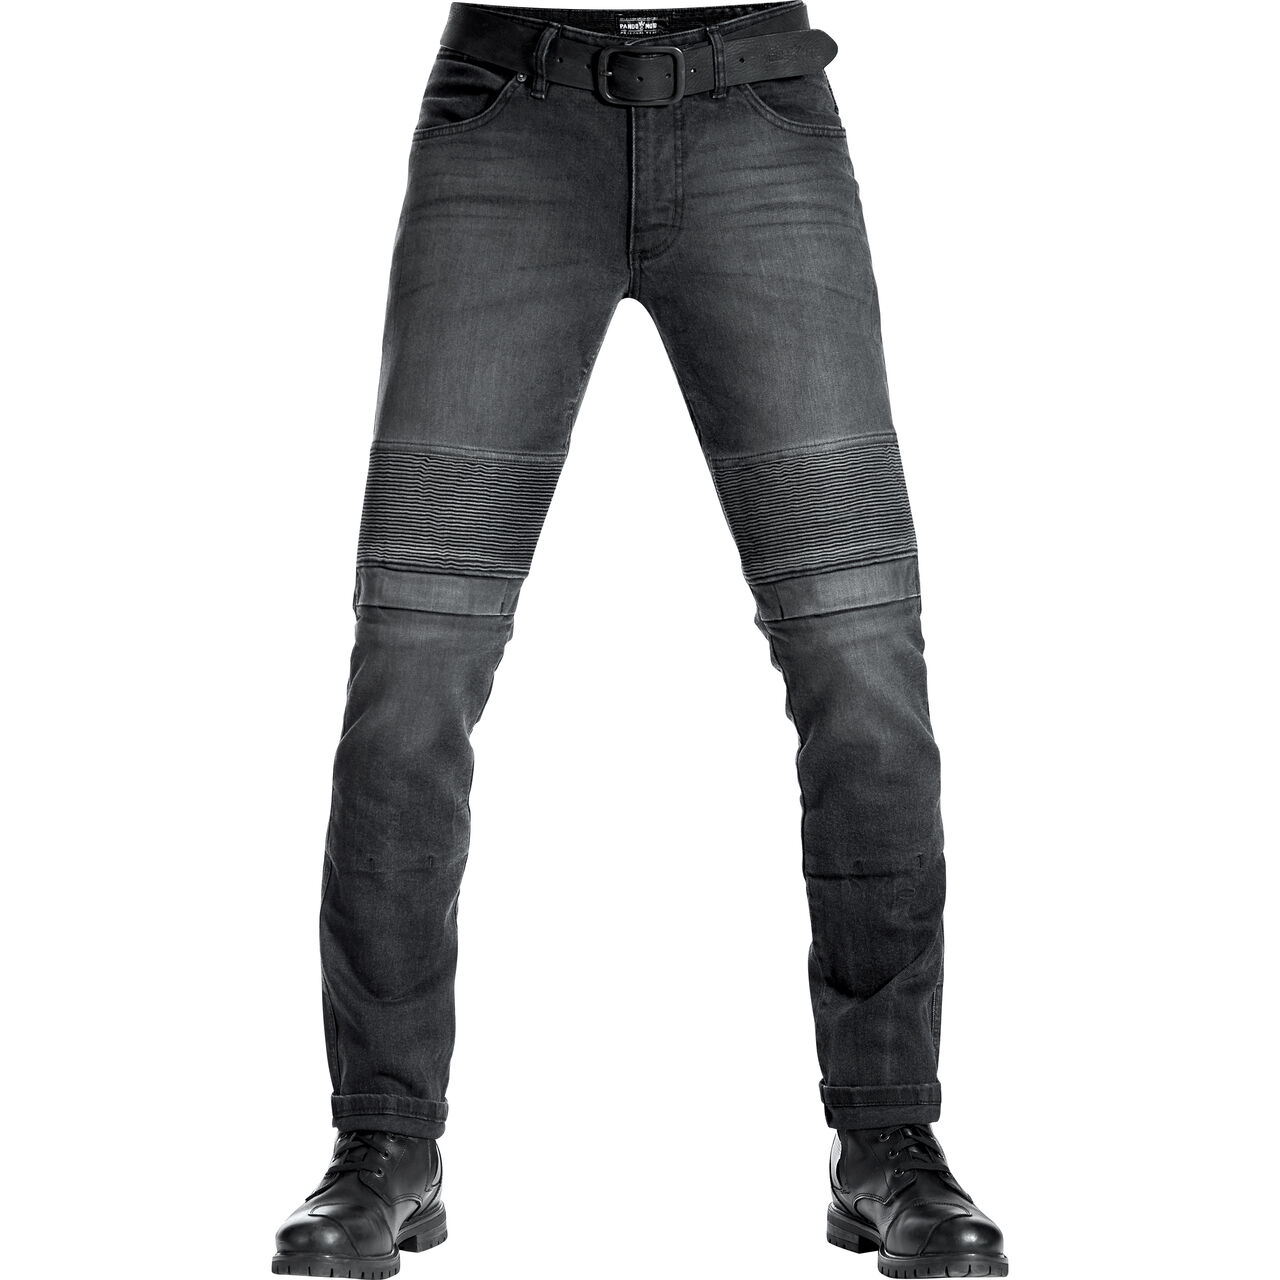 Karl Devil 9 Jeans black 30/34